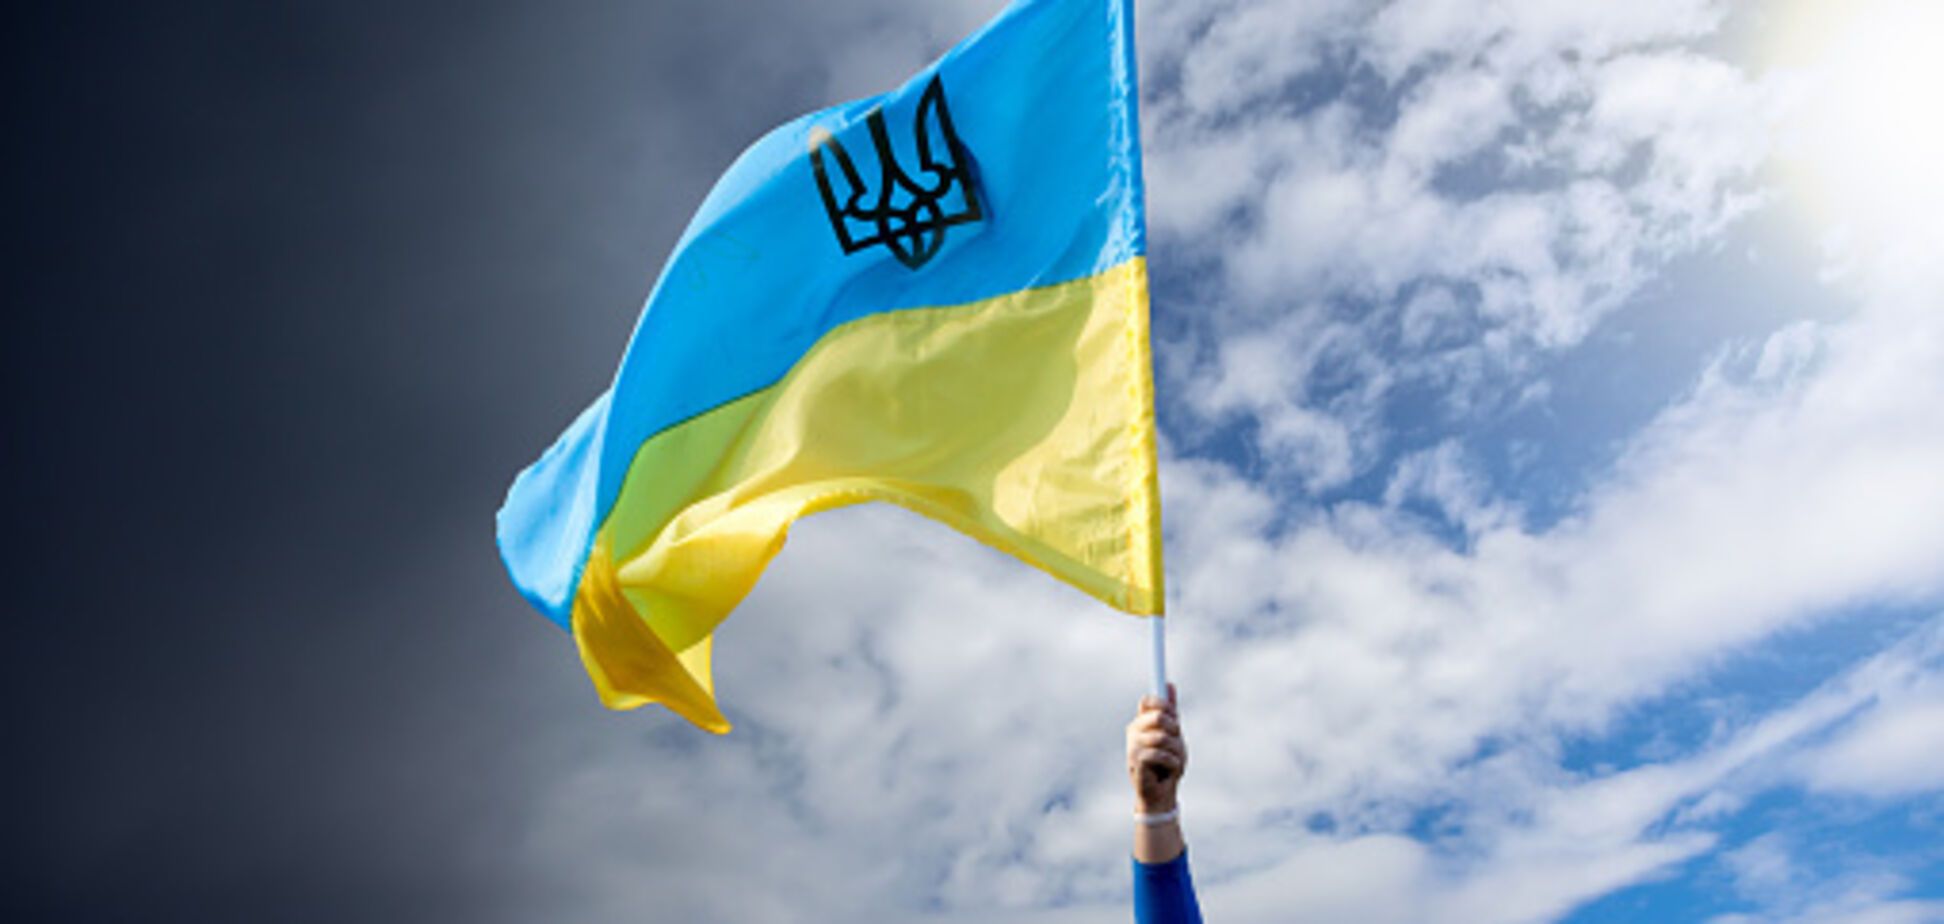 Стратегия мира и безопасности: задачи украинской дипломатии